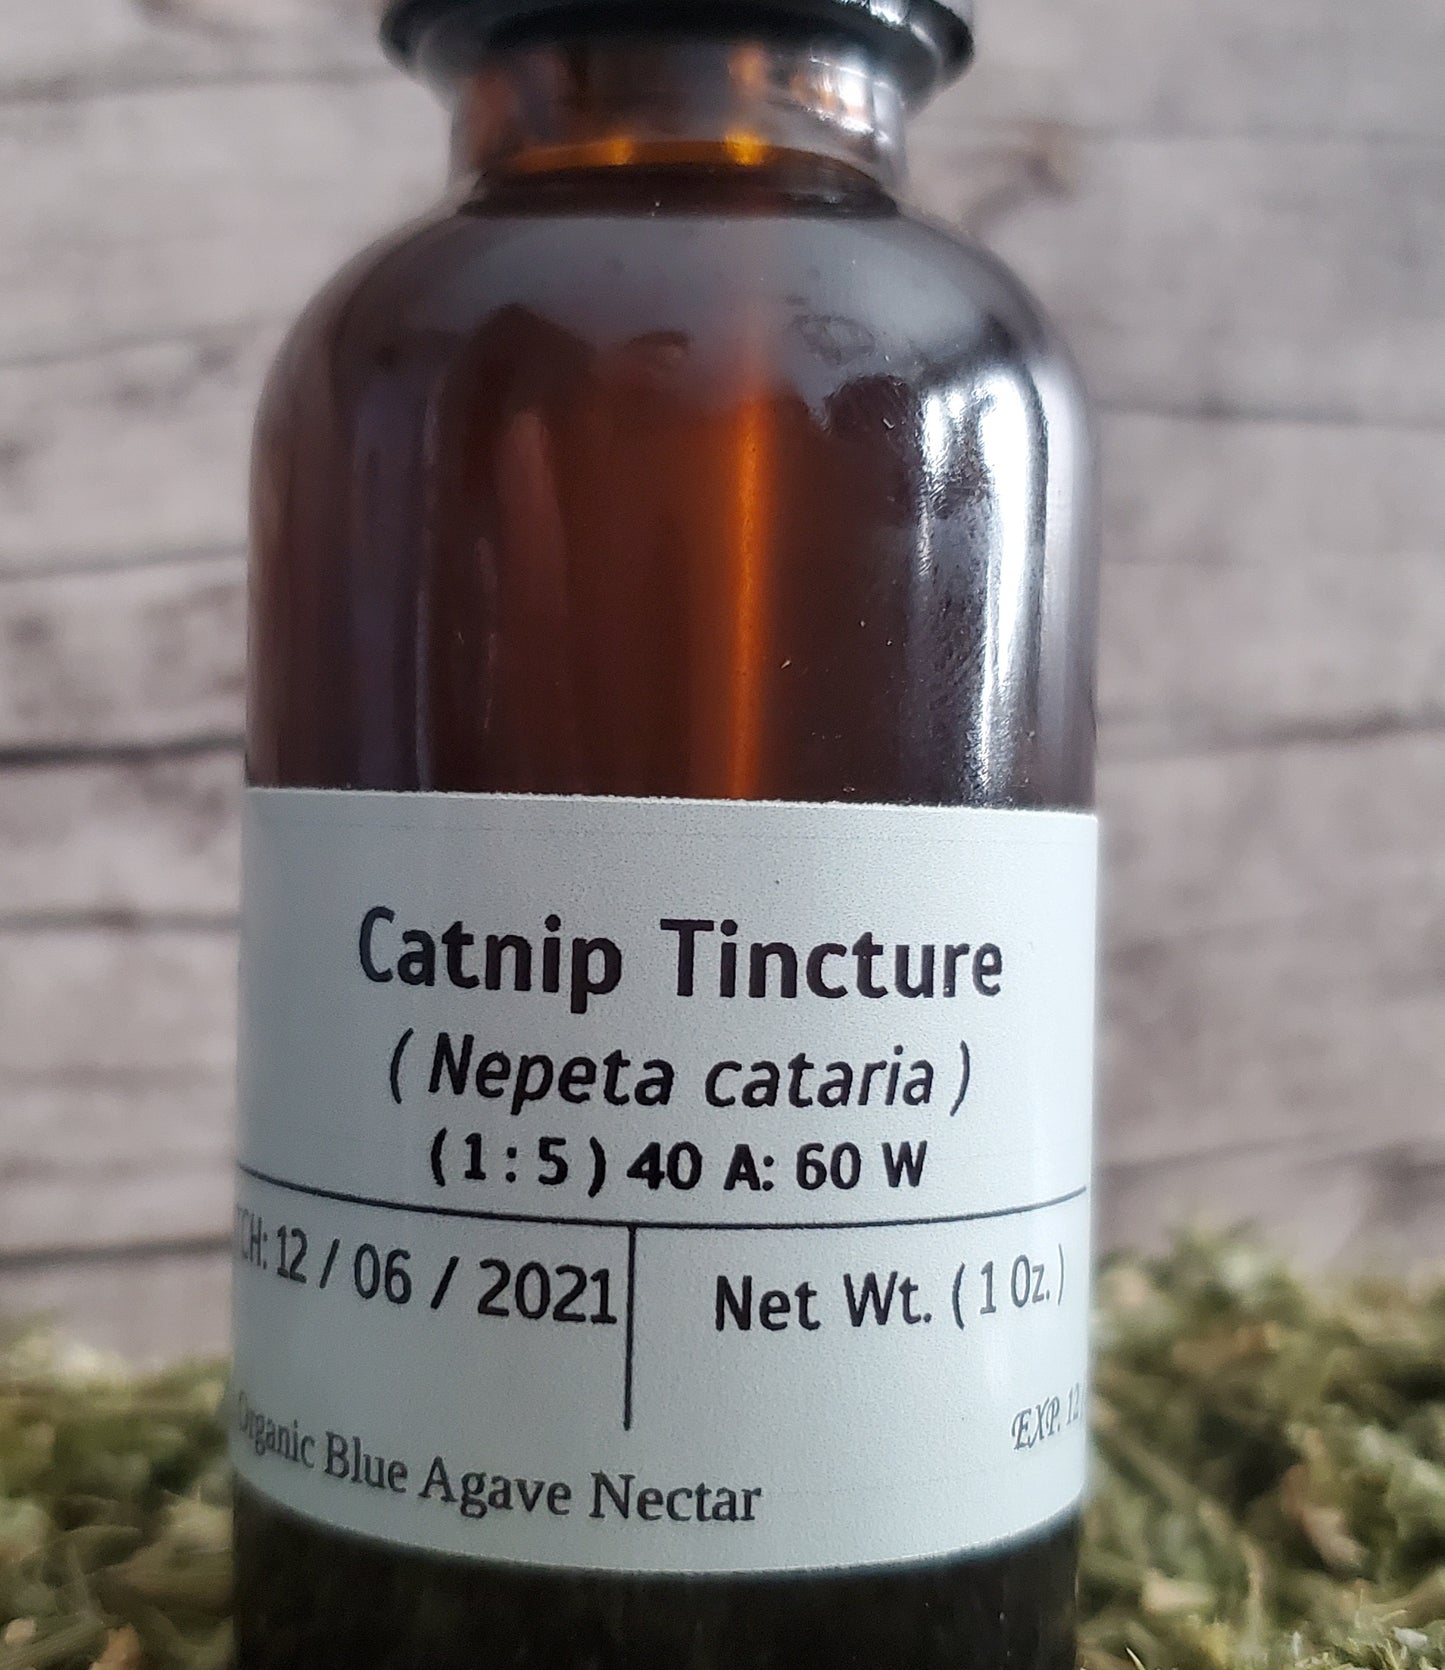 Catnip Tincture (Nepeta cataria)